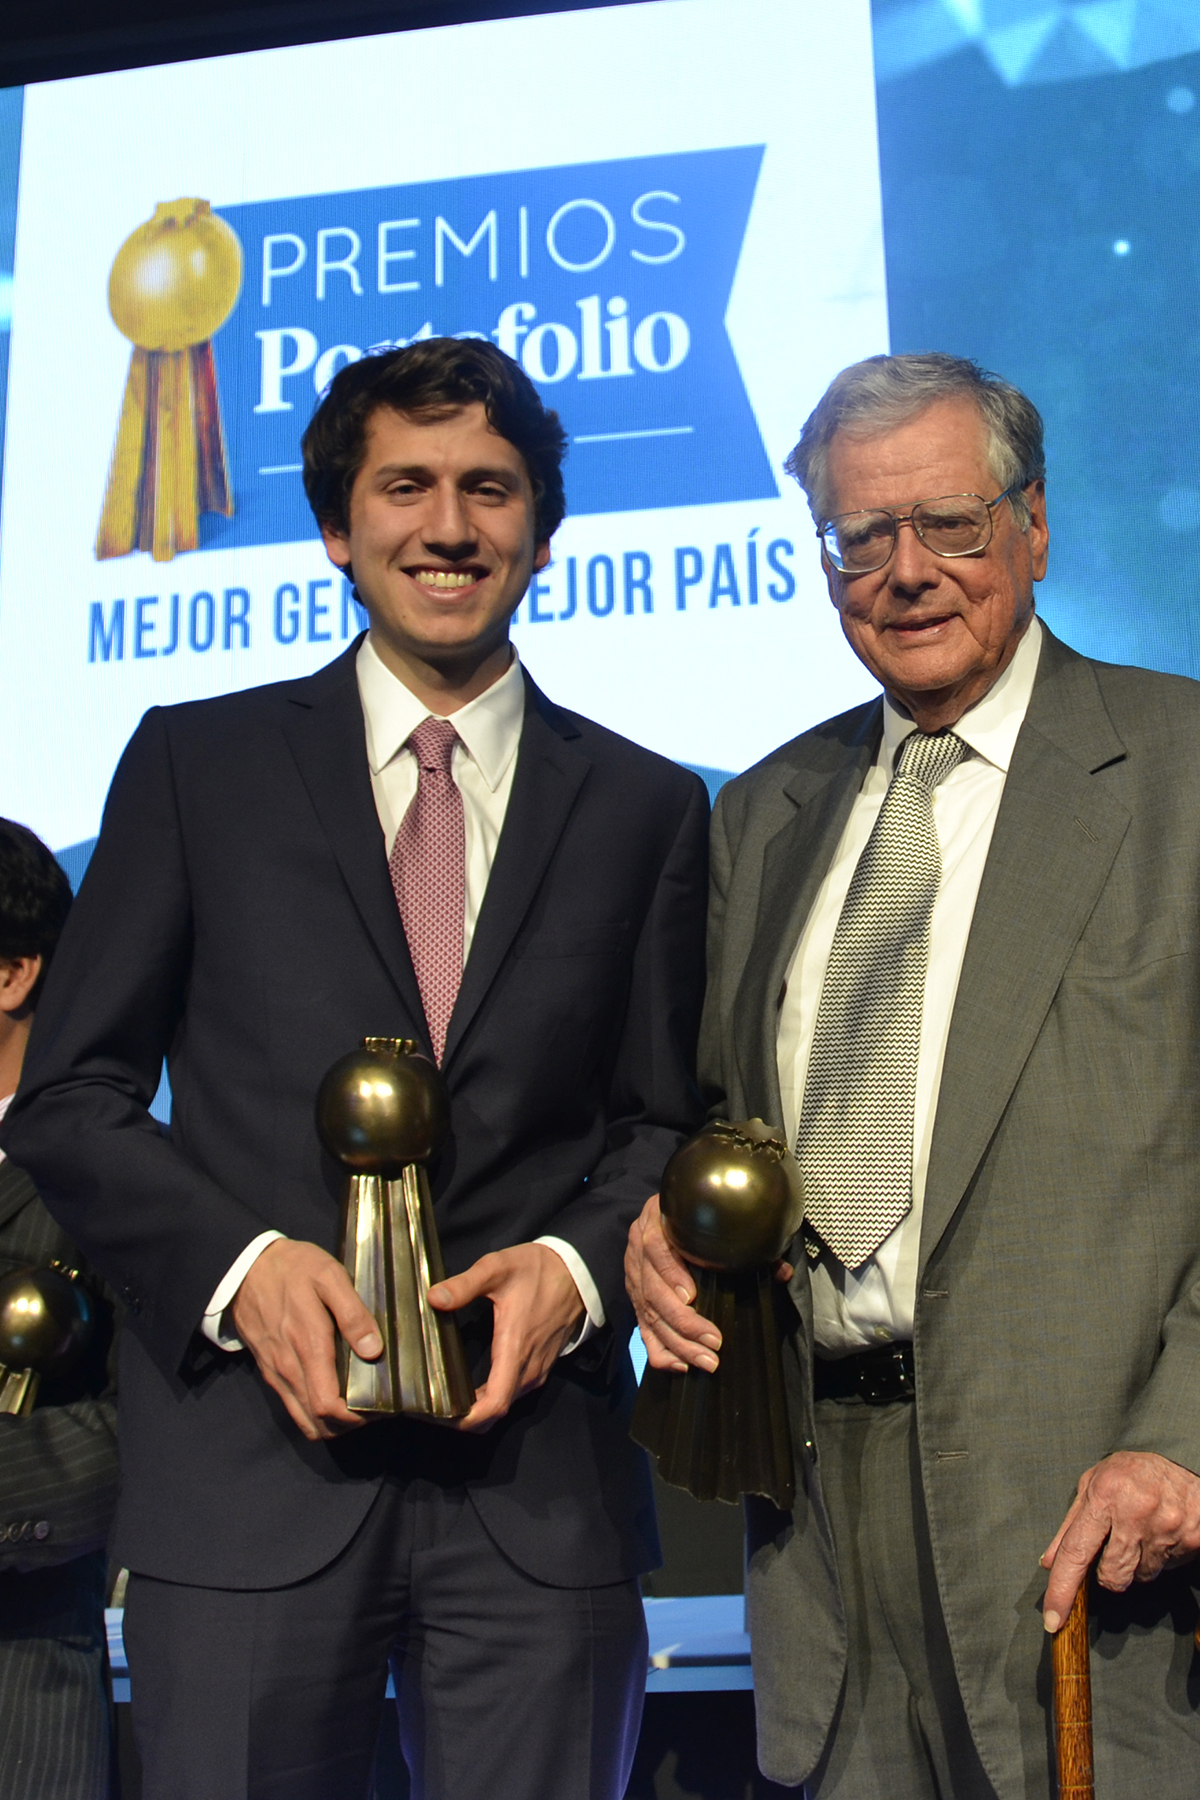 Premios portafolio 2016